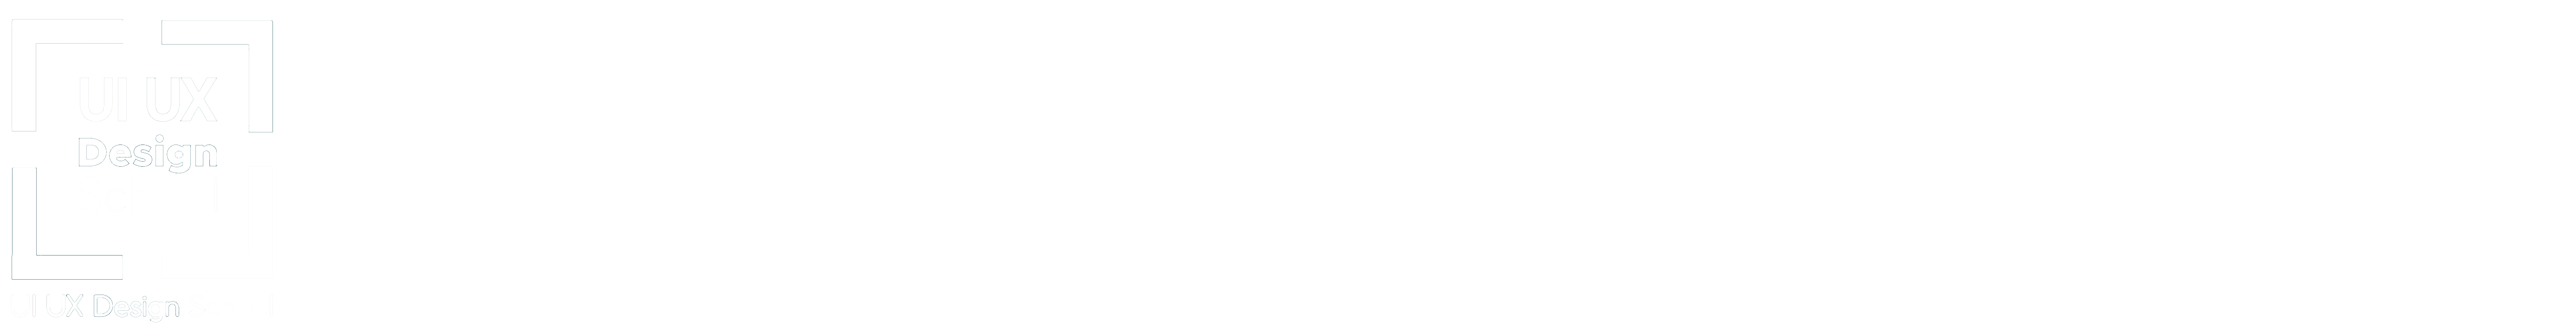 UI UX Design School